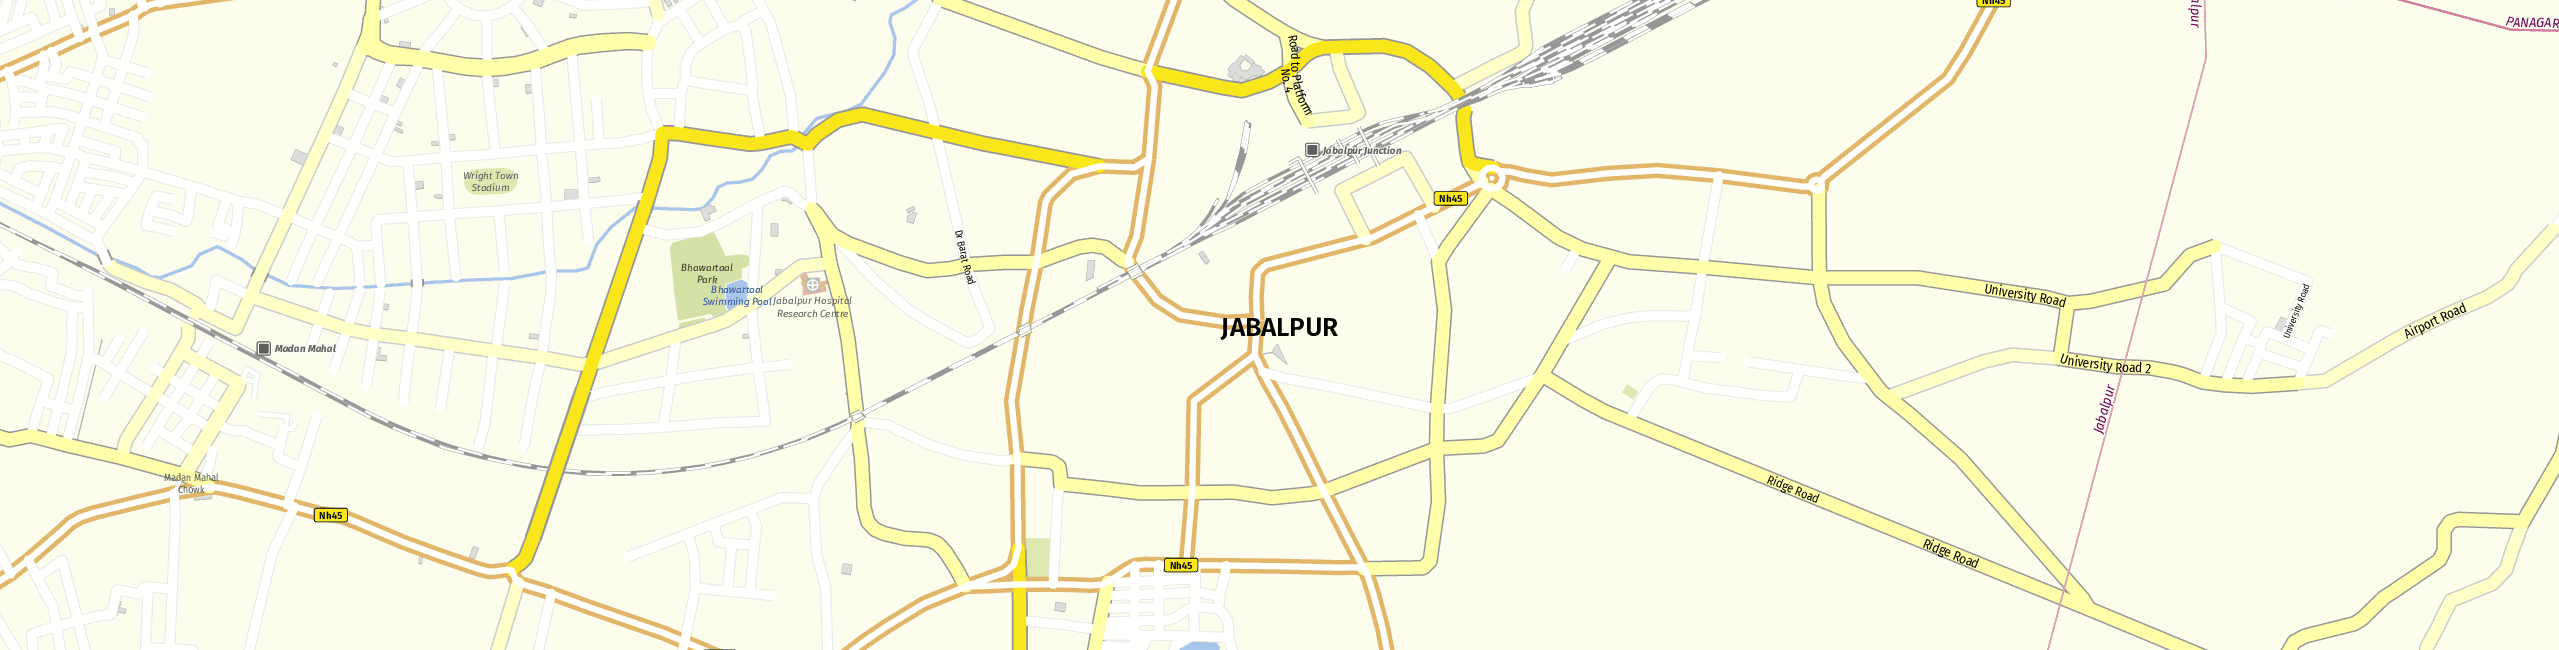 Stadtplan Jabalpur zum Downloaden.